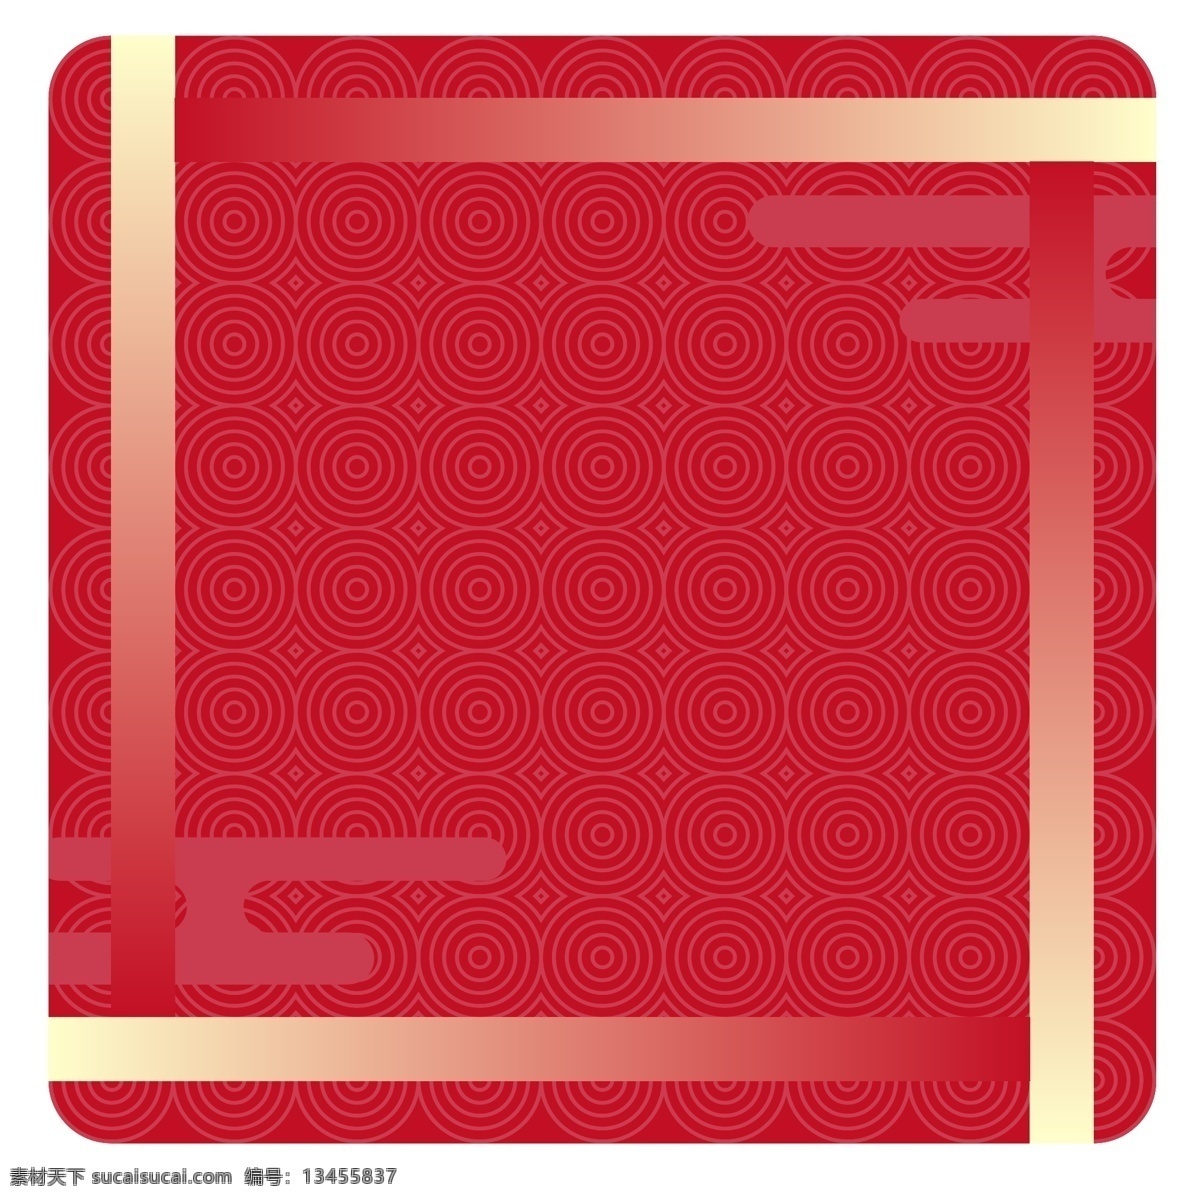 红色 中 国风 图案 矢量 海报 边框 文字 框 彩色 装饰 平面设计 原创 透明底 免抠 节日 海报装饰 清新 通用 标题框 新年边框 海报边框 文字框